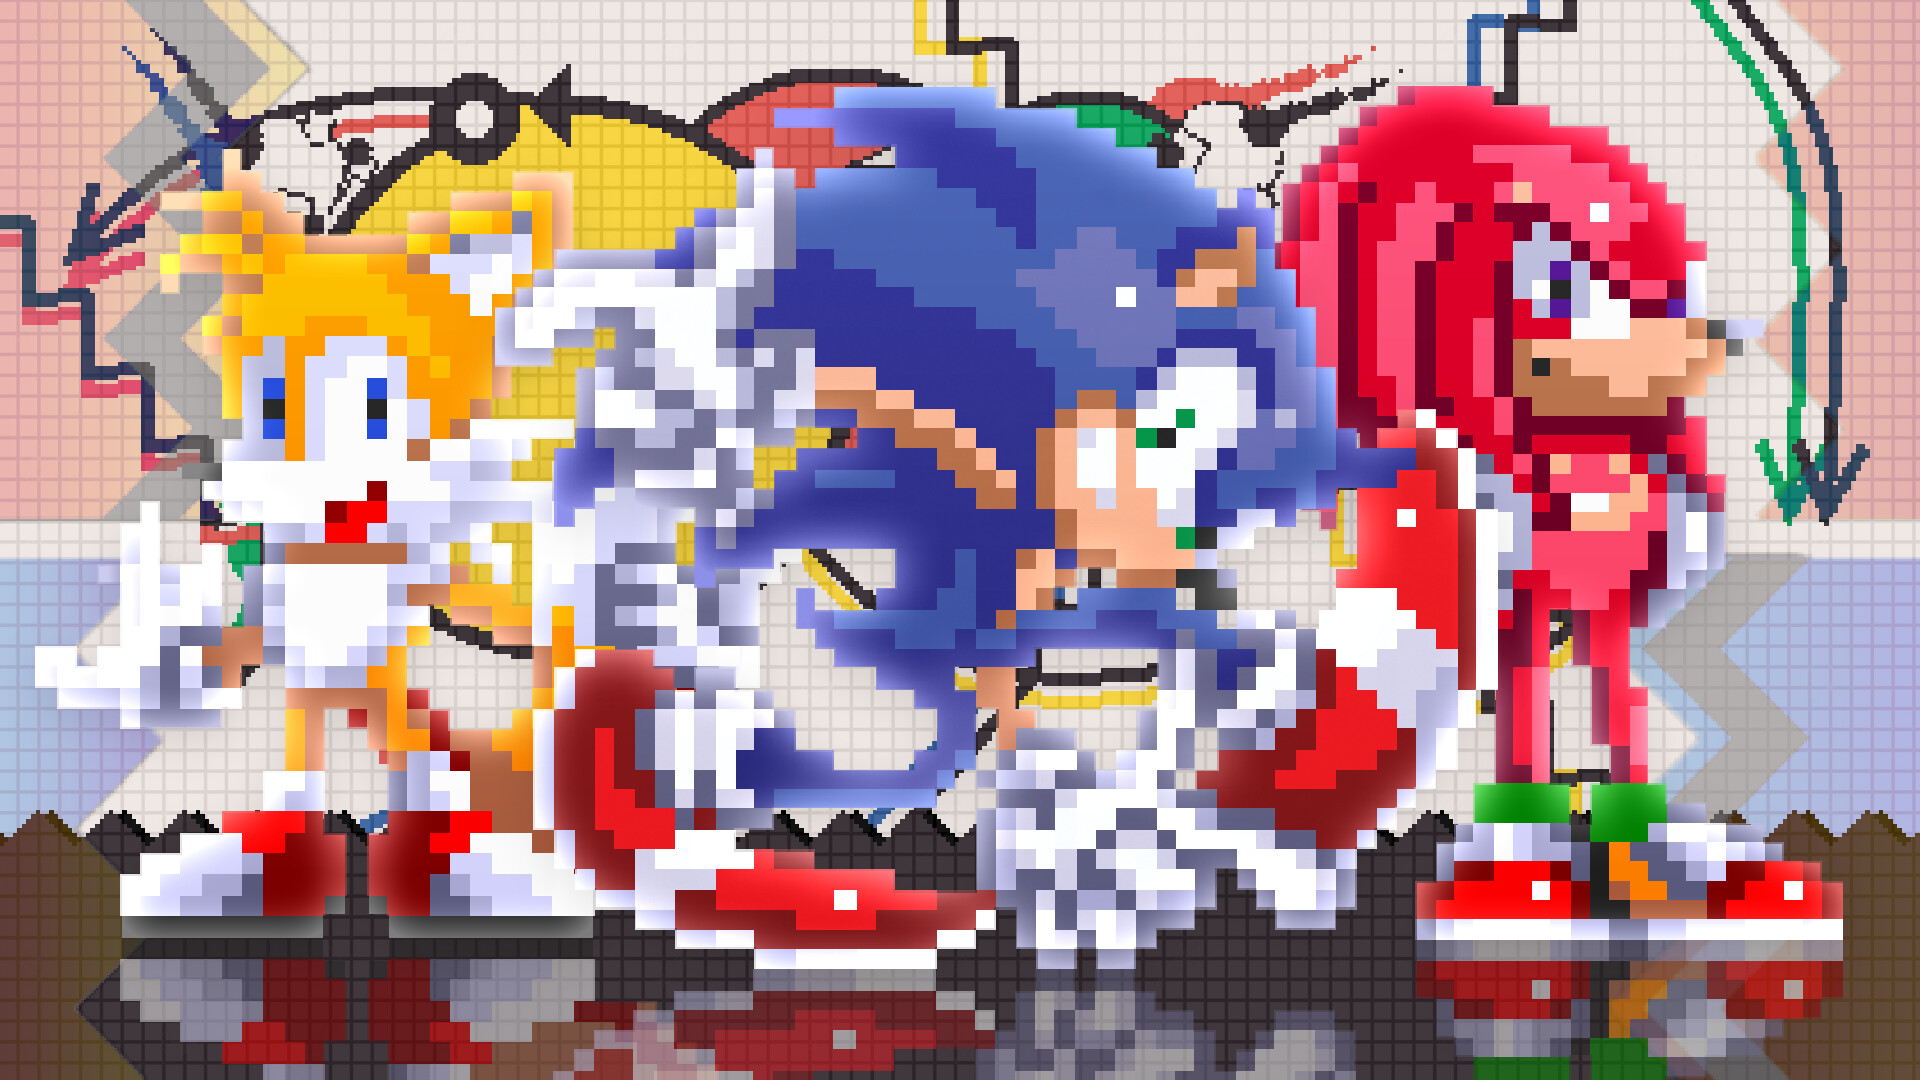 Sonic 3 A.I.R - Modern Shadow Mod 